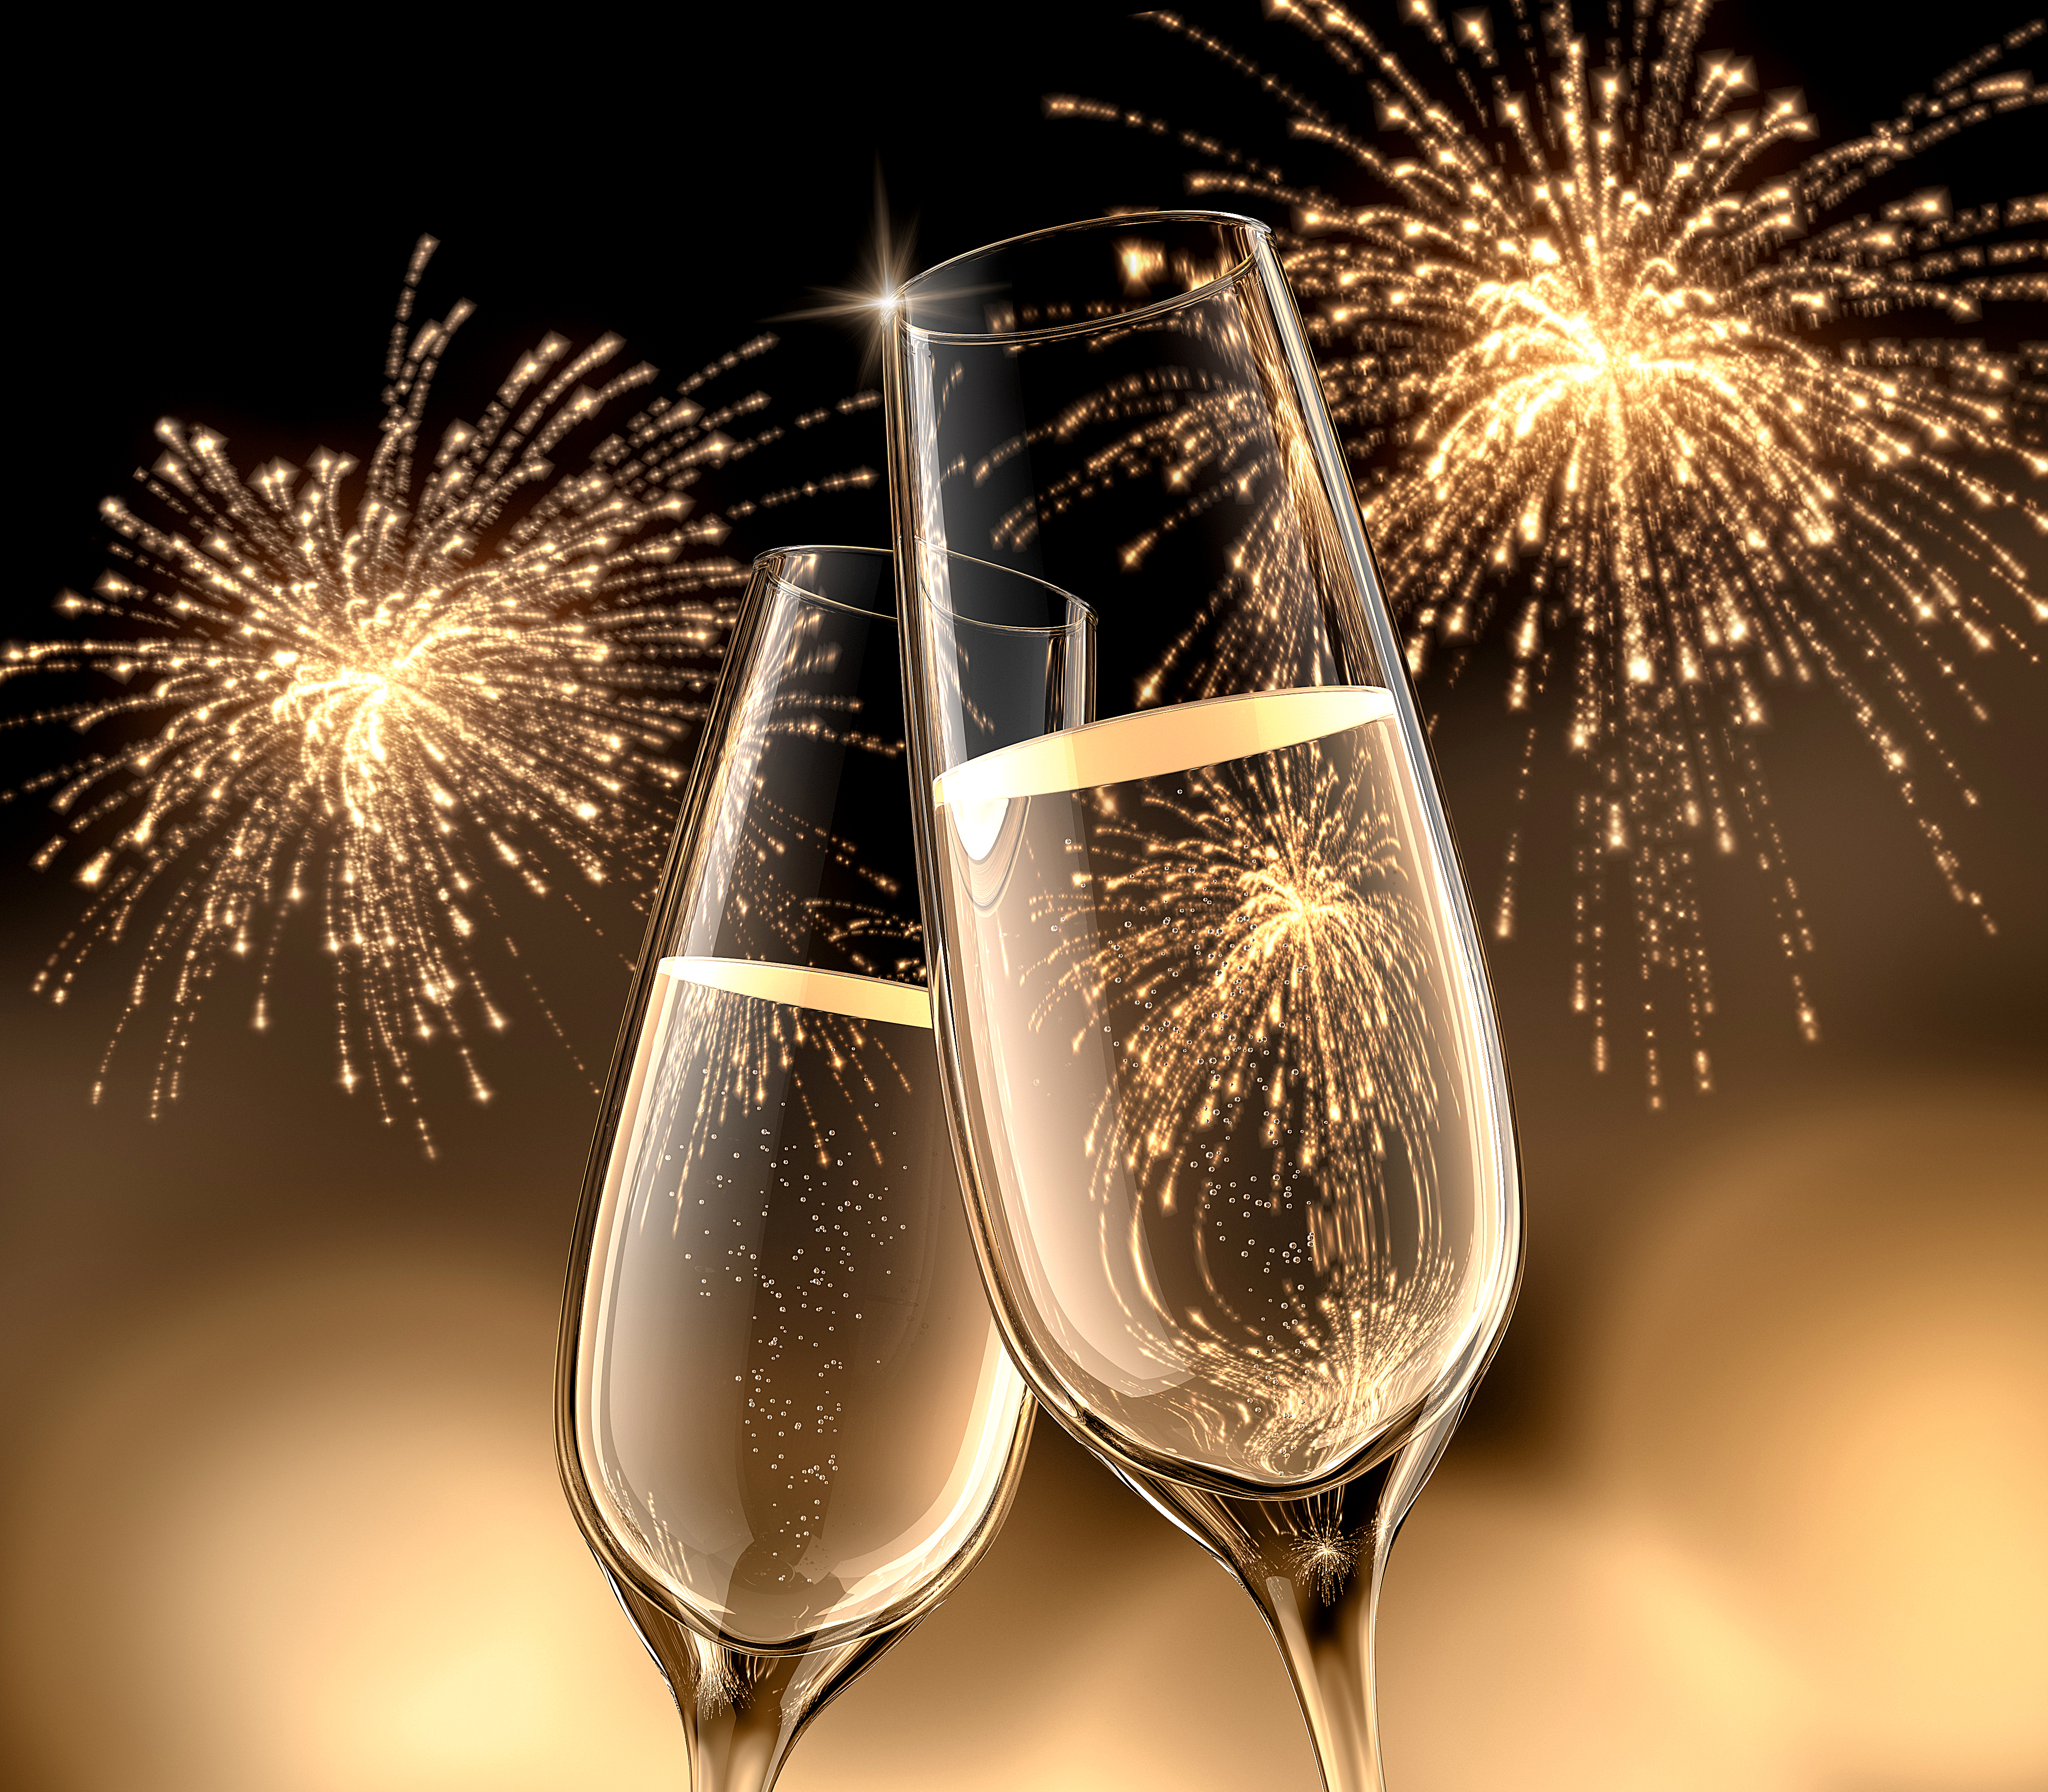 Праздники Новый год Шампанское Салют Бокалы Двое Еда фото 4000x3500 обои ка...